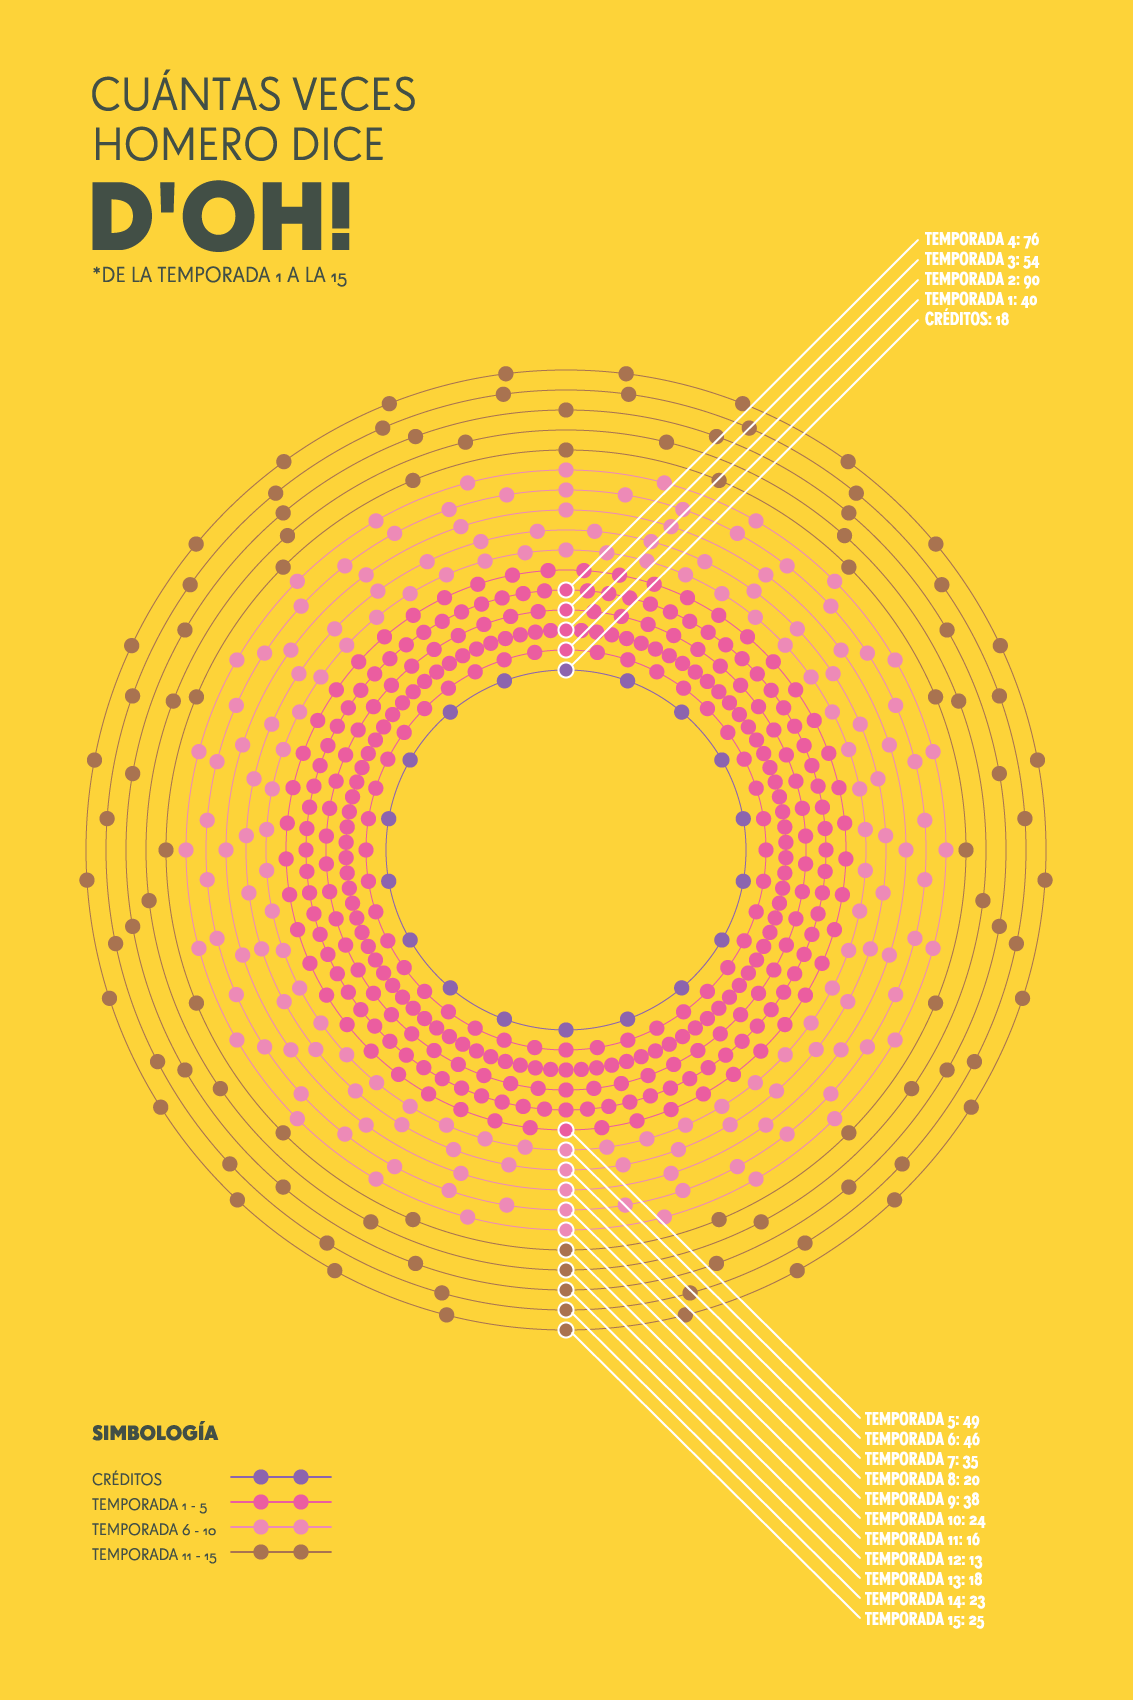 Gráfica circular con fondo amarillo y círculos rosados.